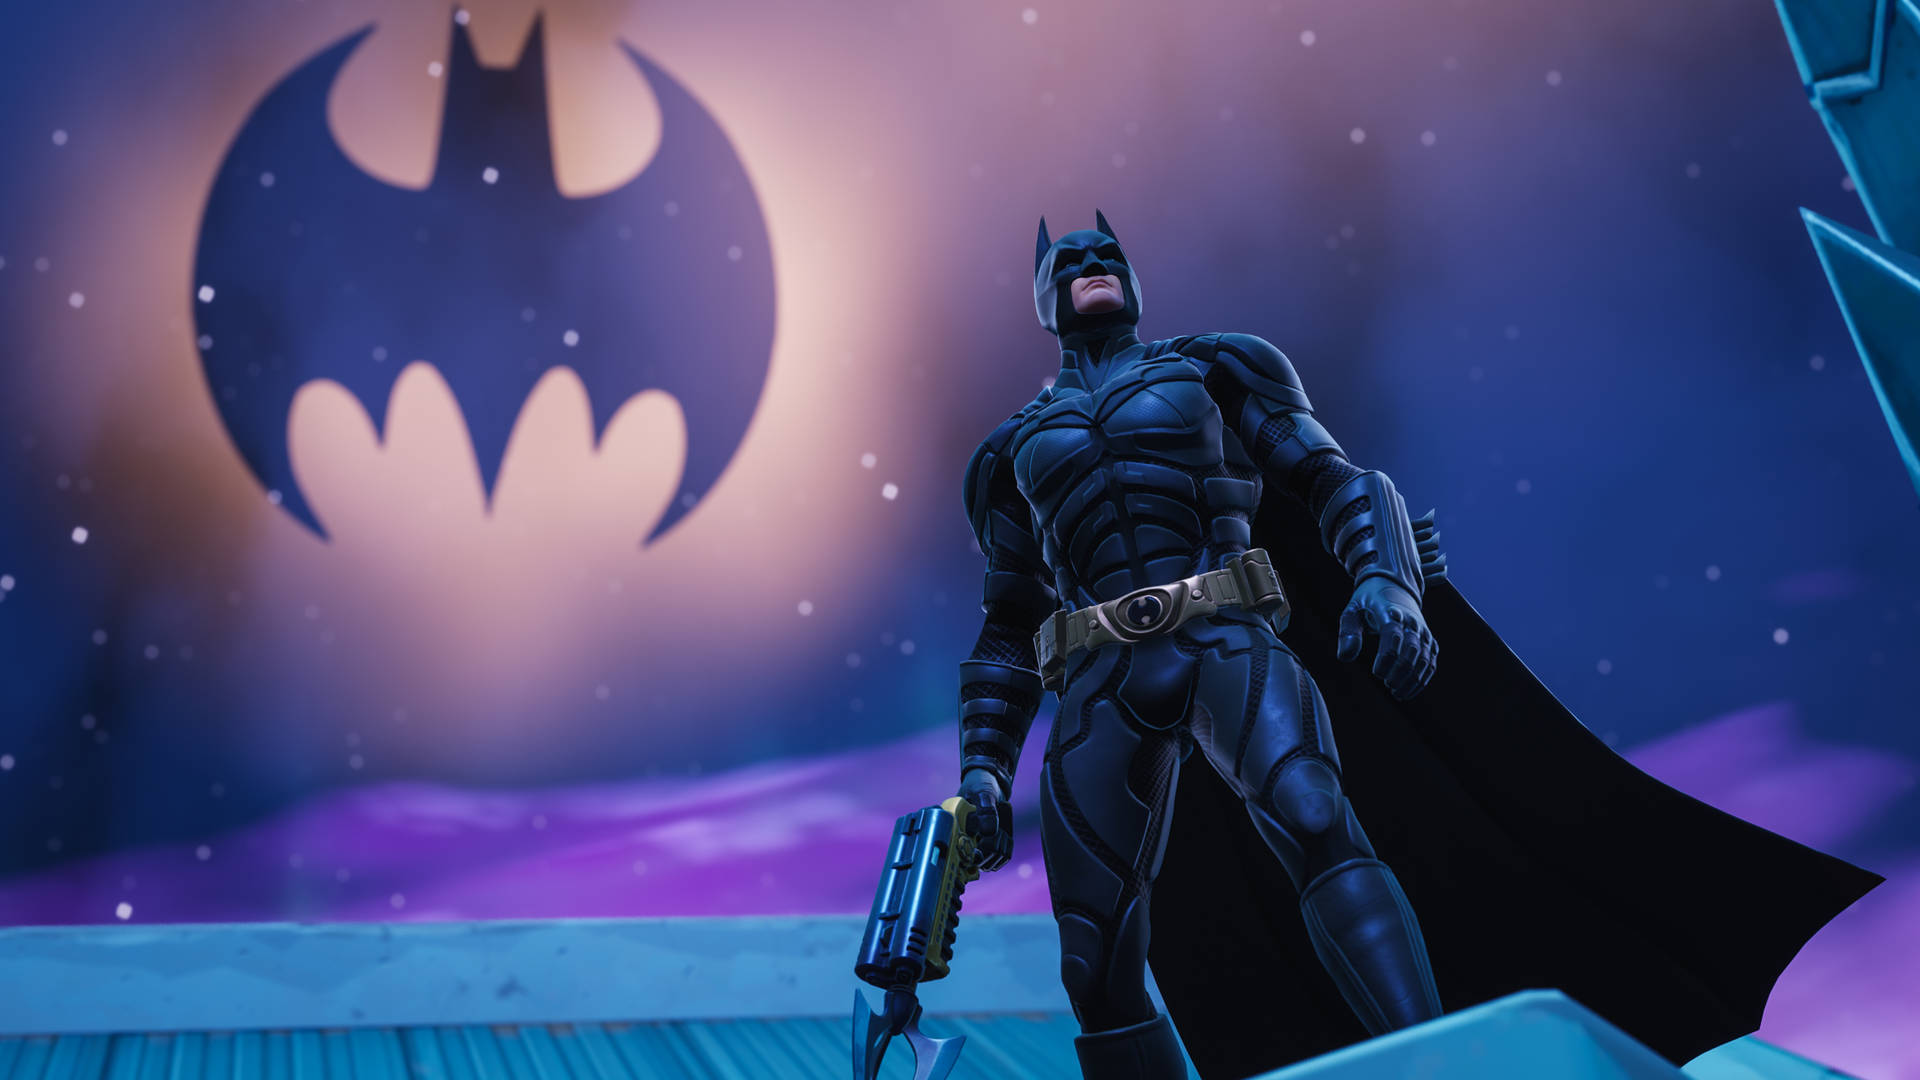 Batman Skin In Fortnite Background